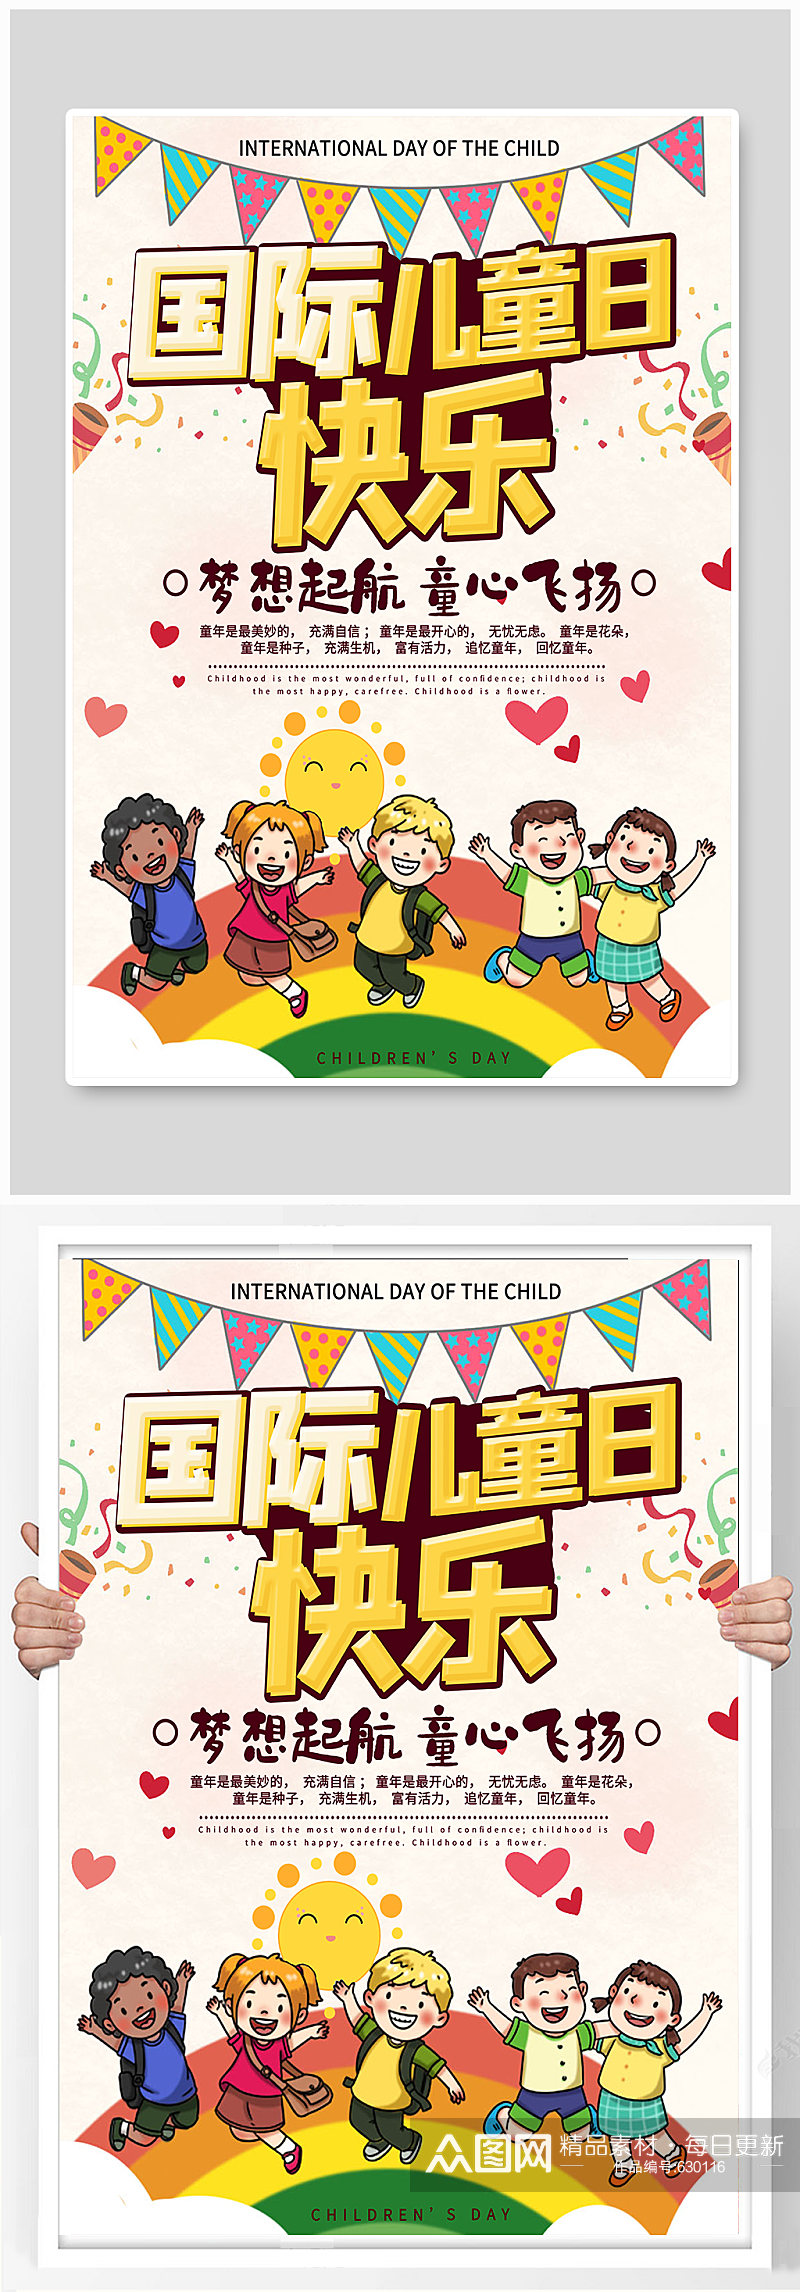 国际儿童日快乐海报素材